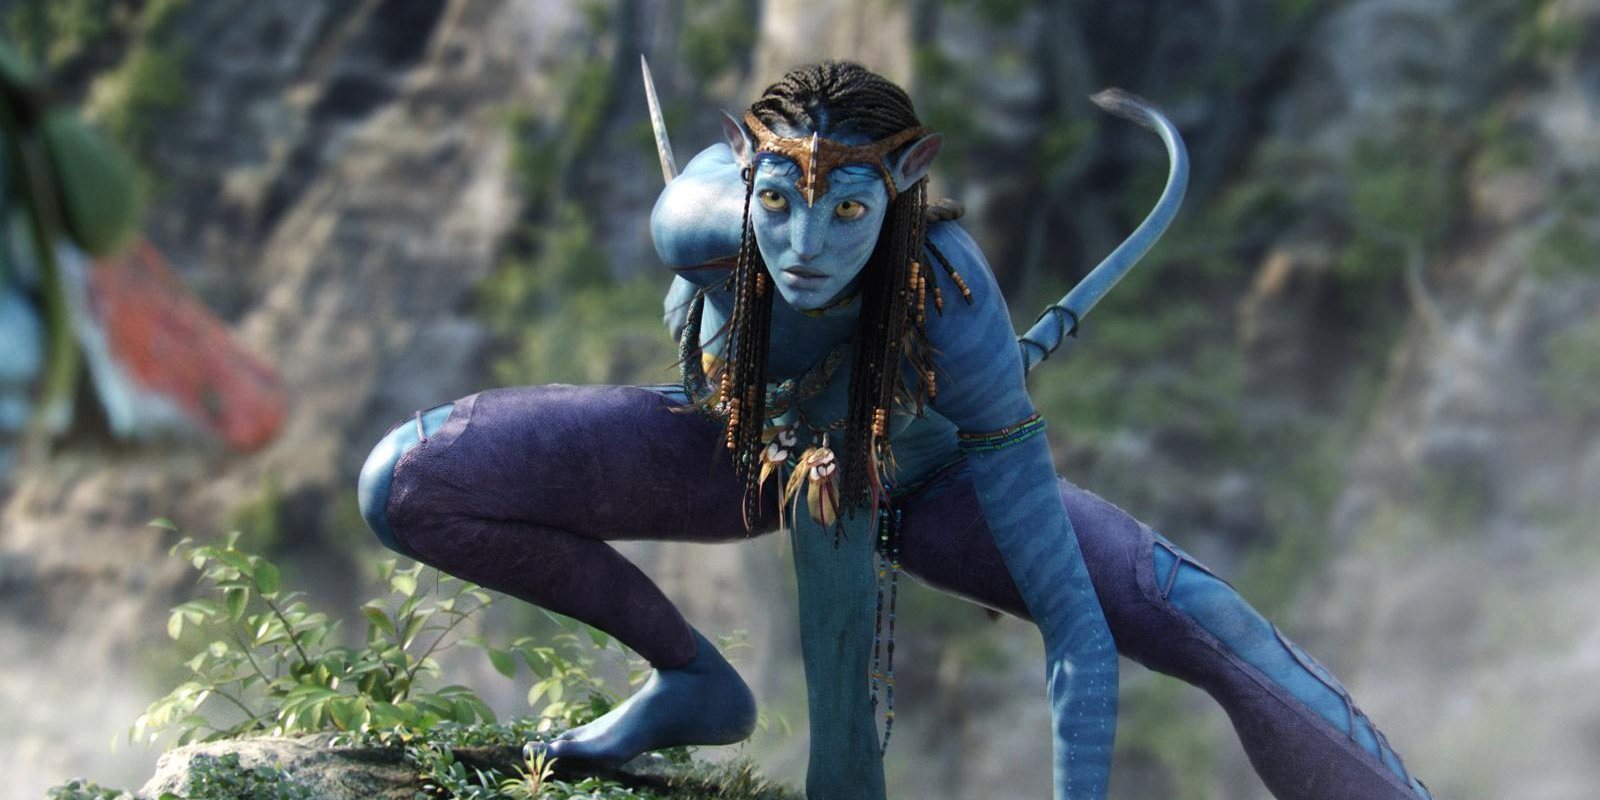 Las secuelas de 'Avatar' ya tendrían título oficial